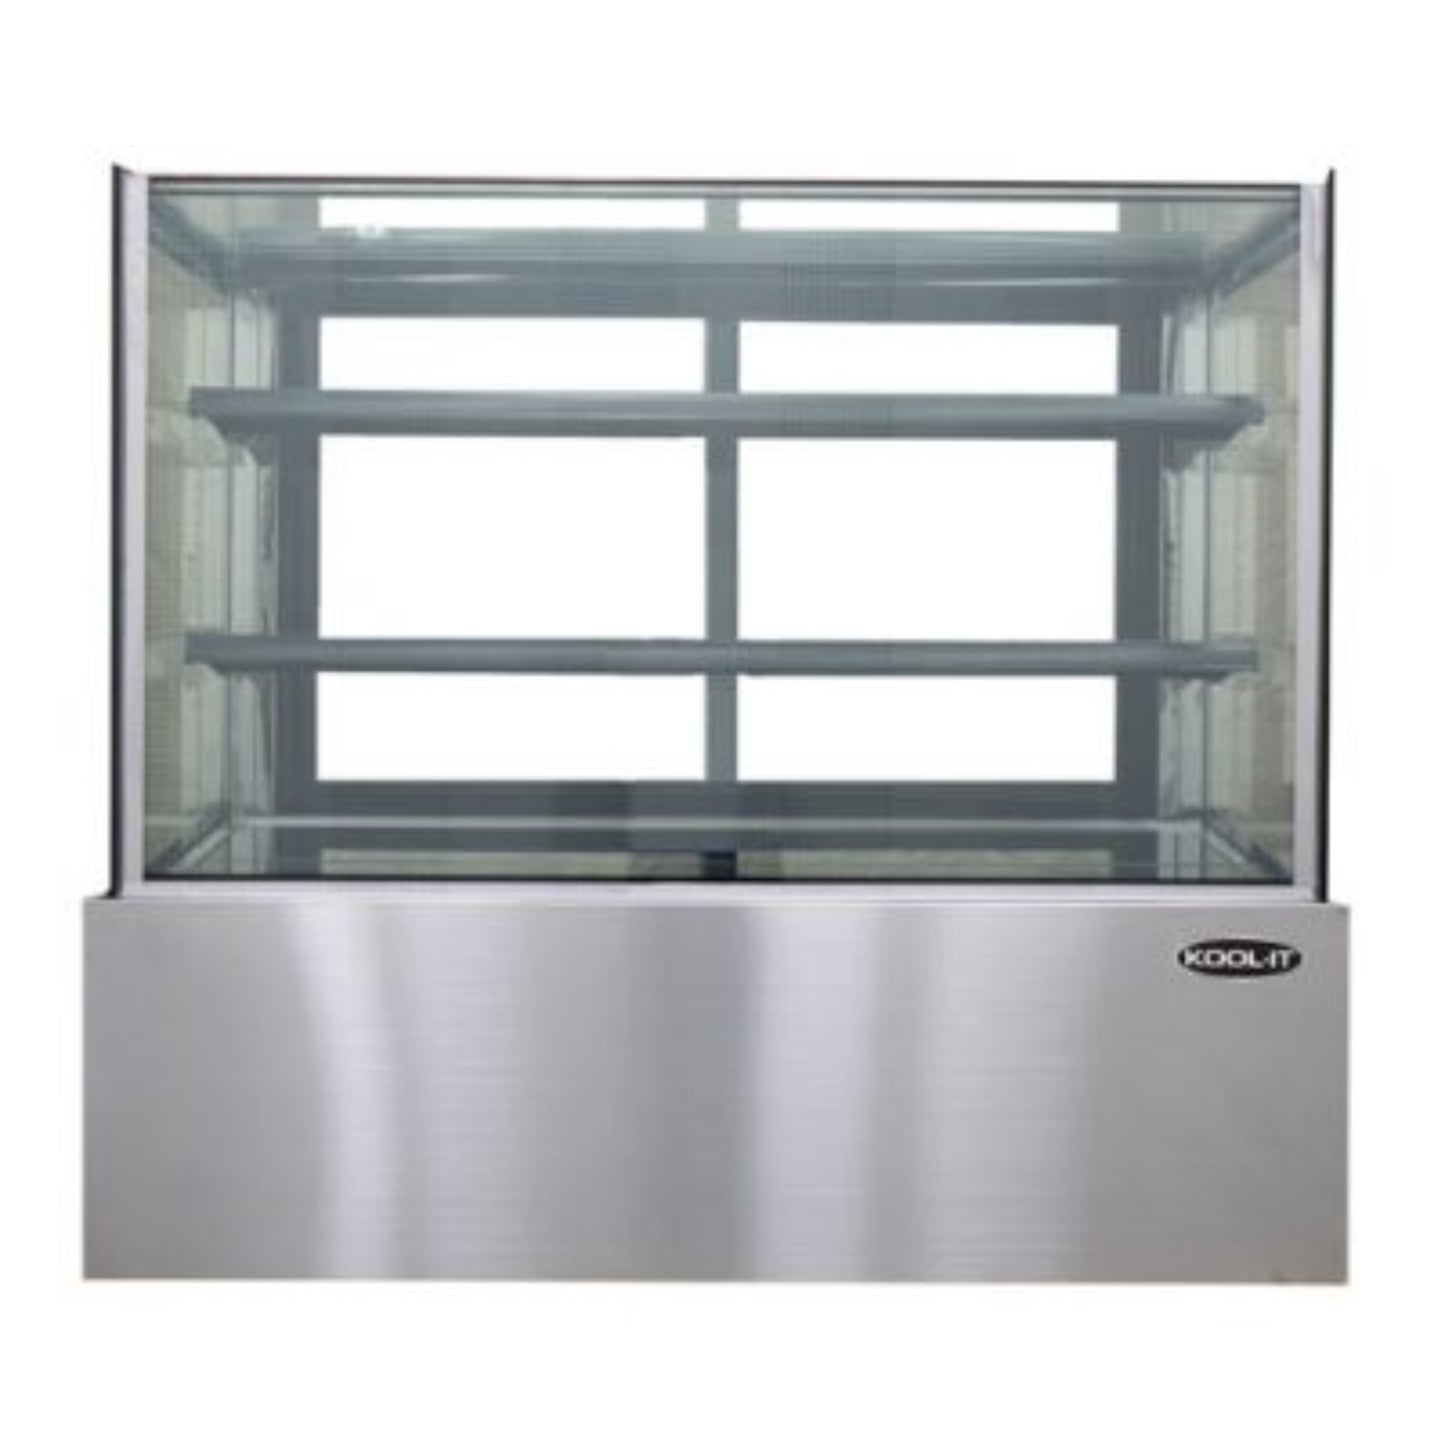 Kool-It KBF-60 60" Refrigerated Flat Glass Display Case